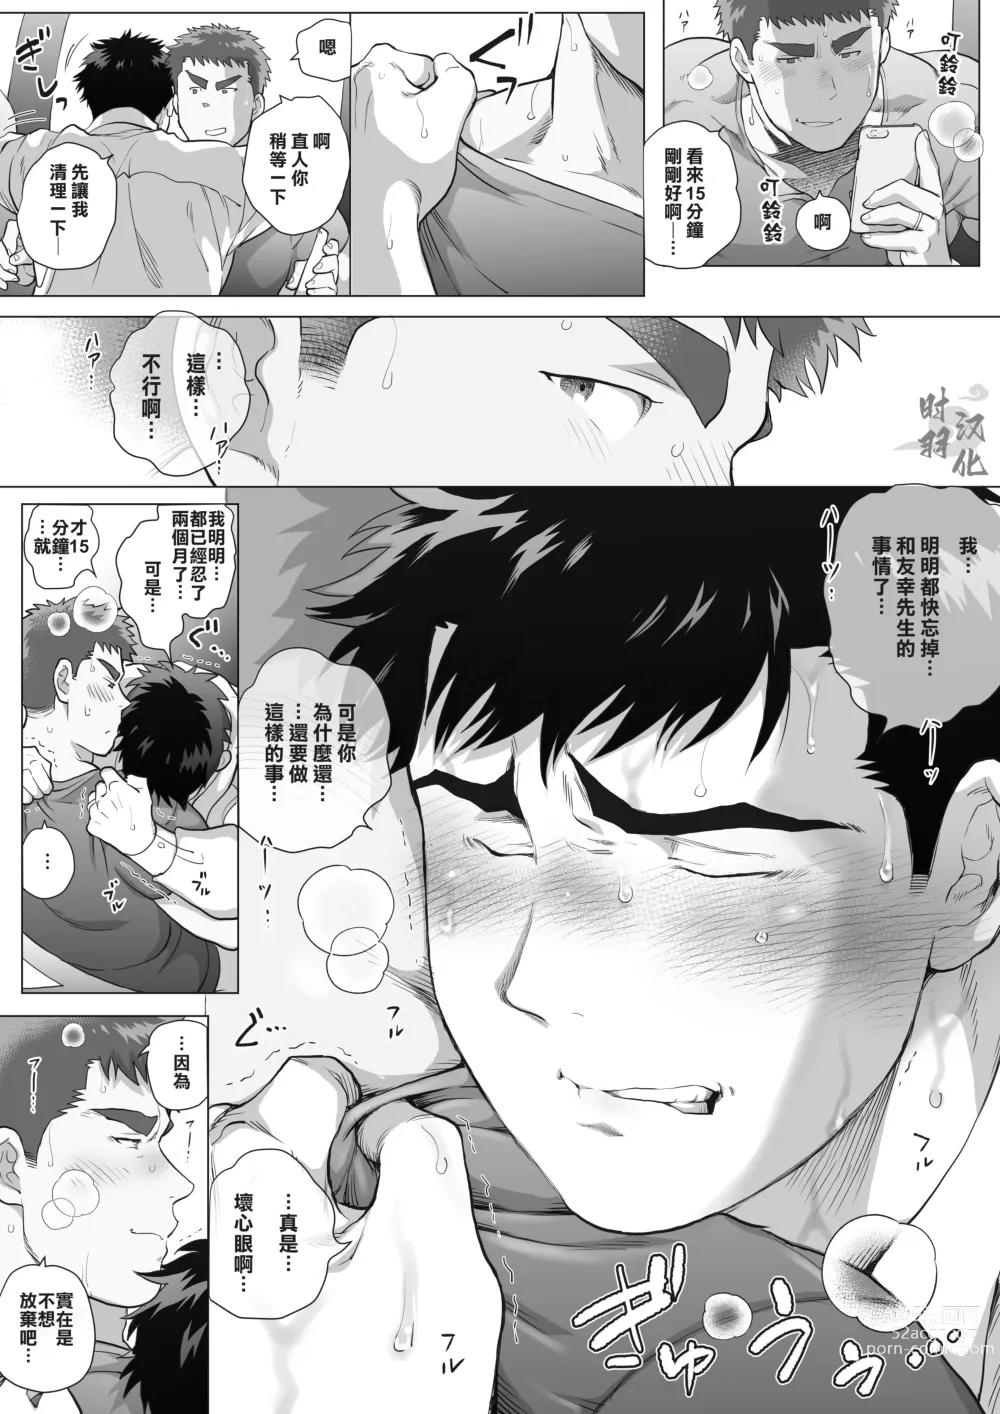 Page 36 of manga 直人爸爸与友幸爸爸 第三话